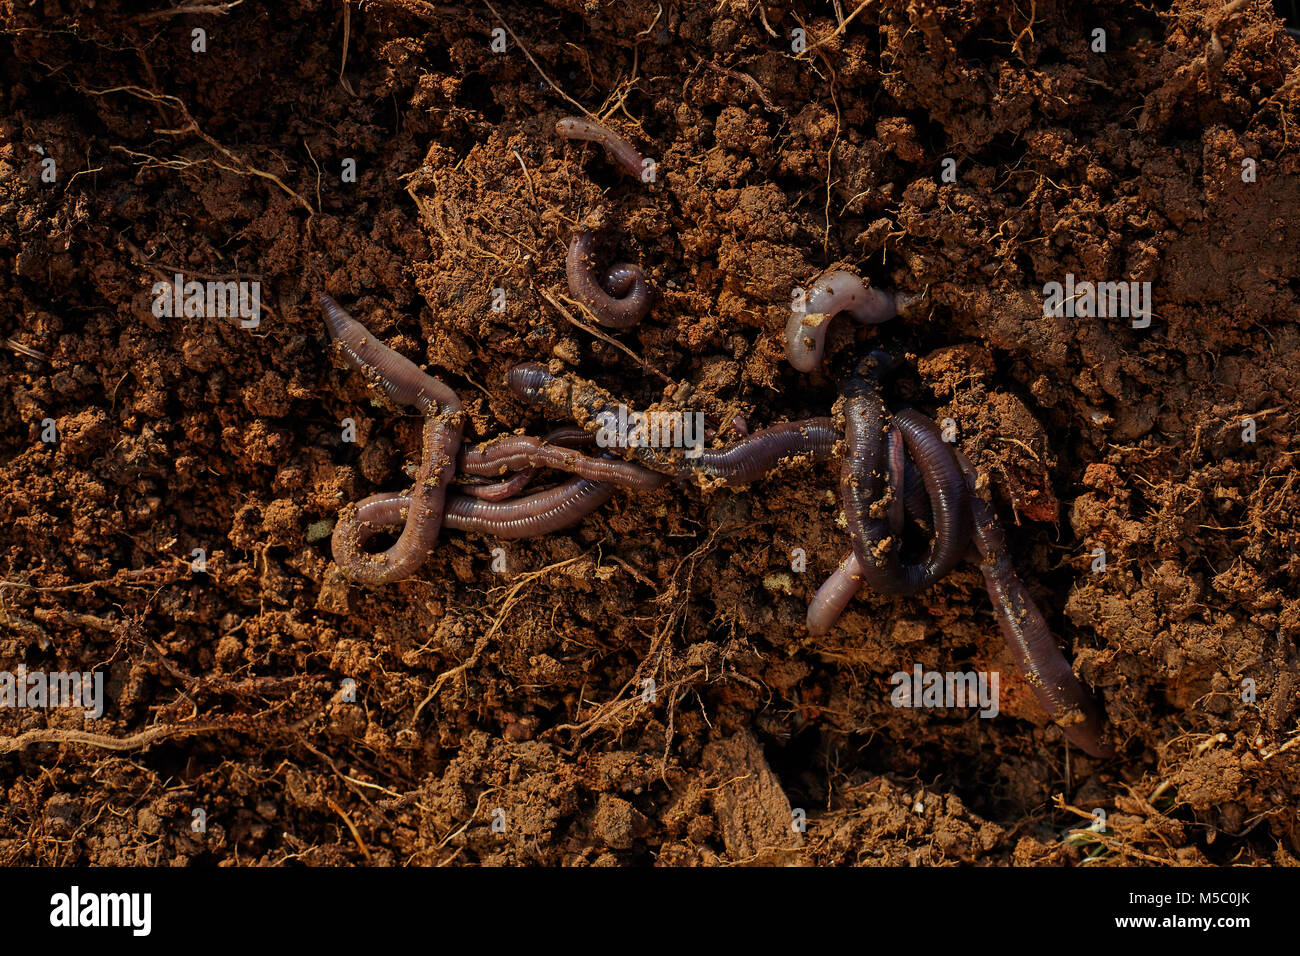 Worms on soil. Stock Photo